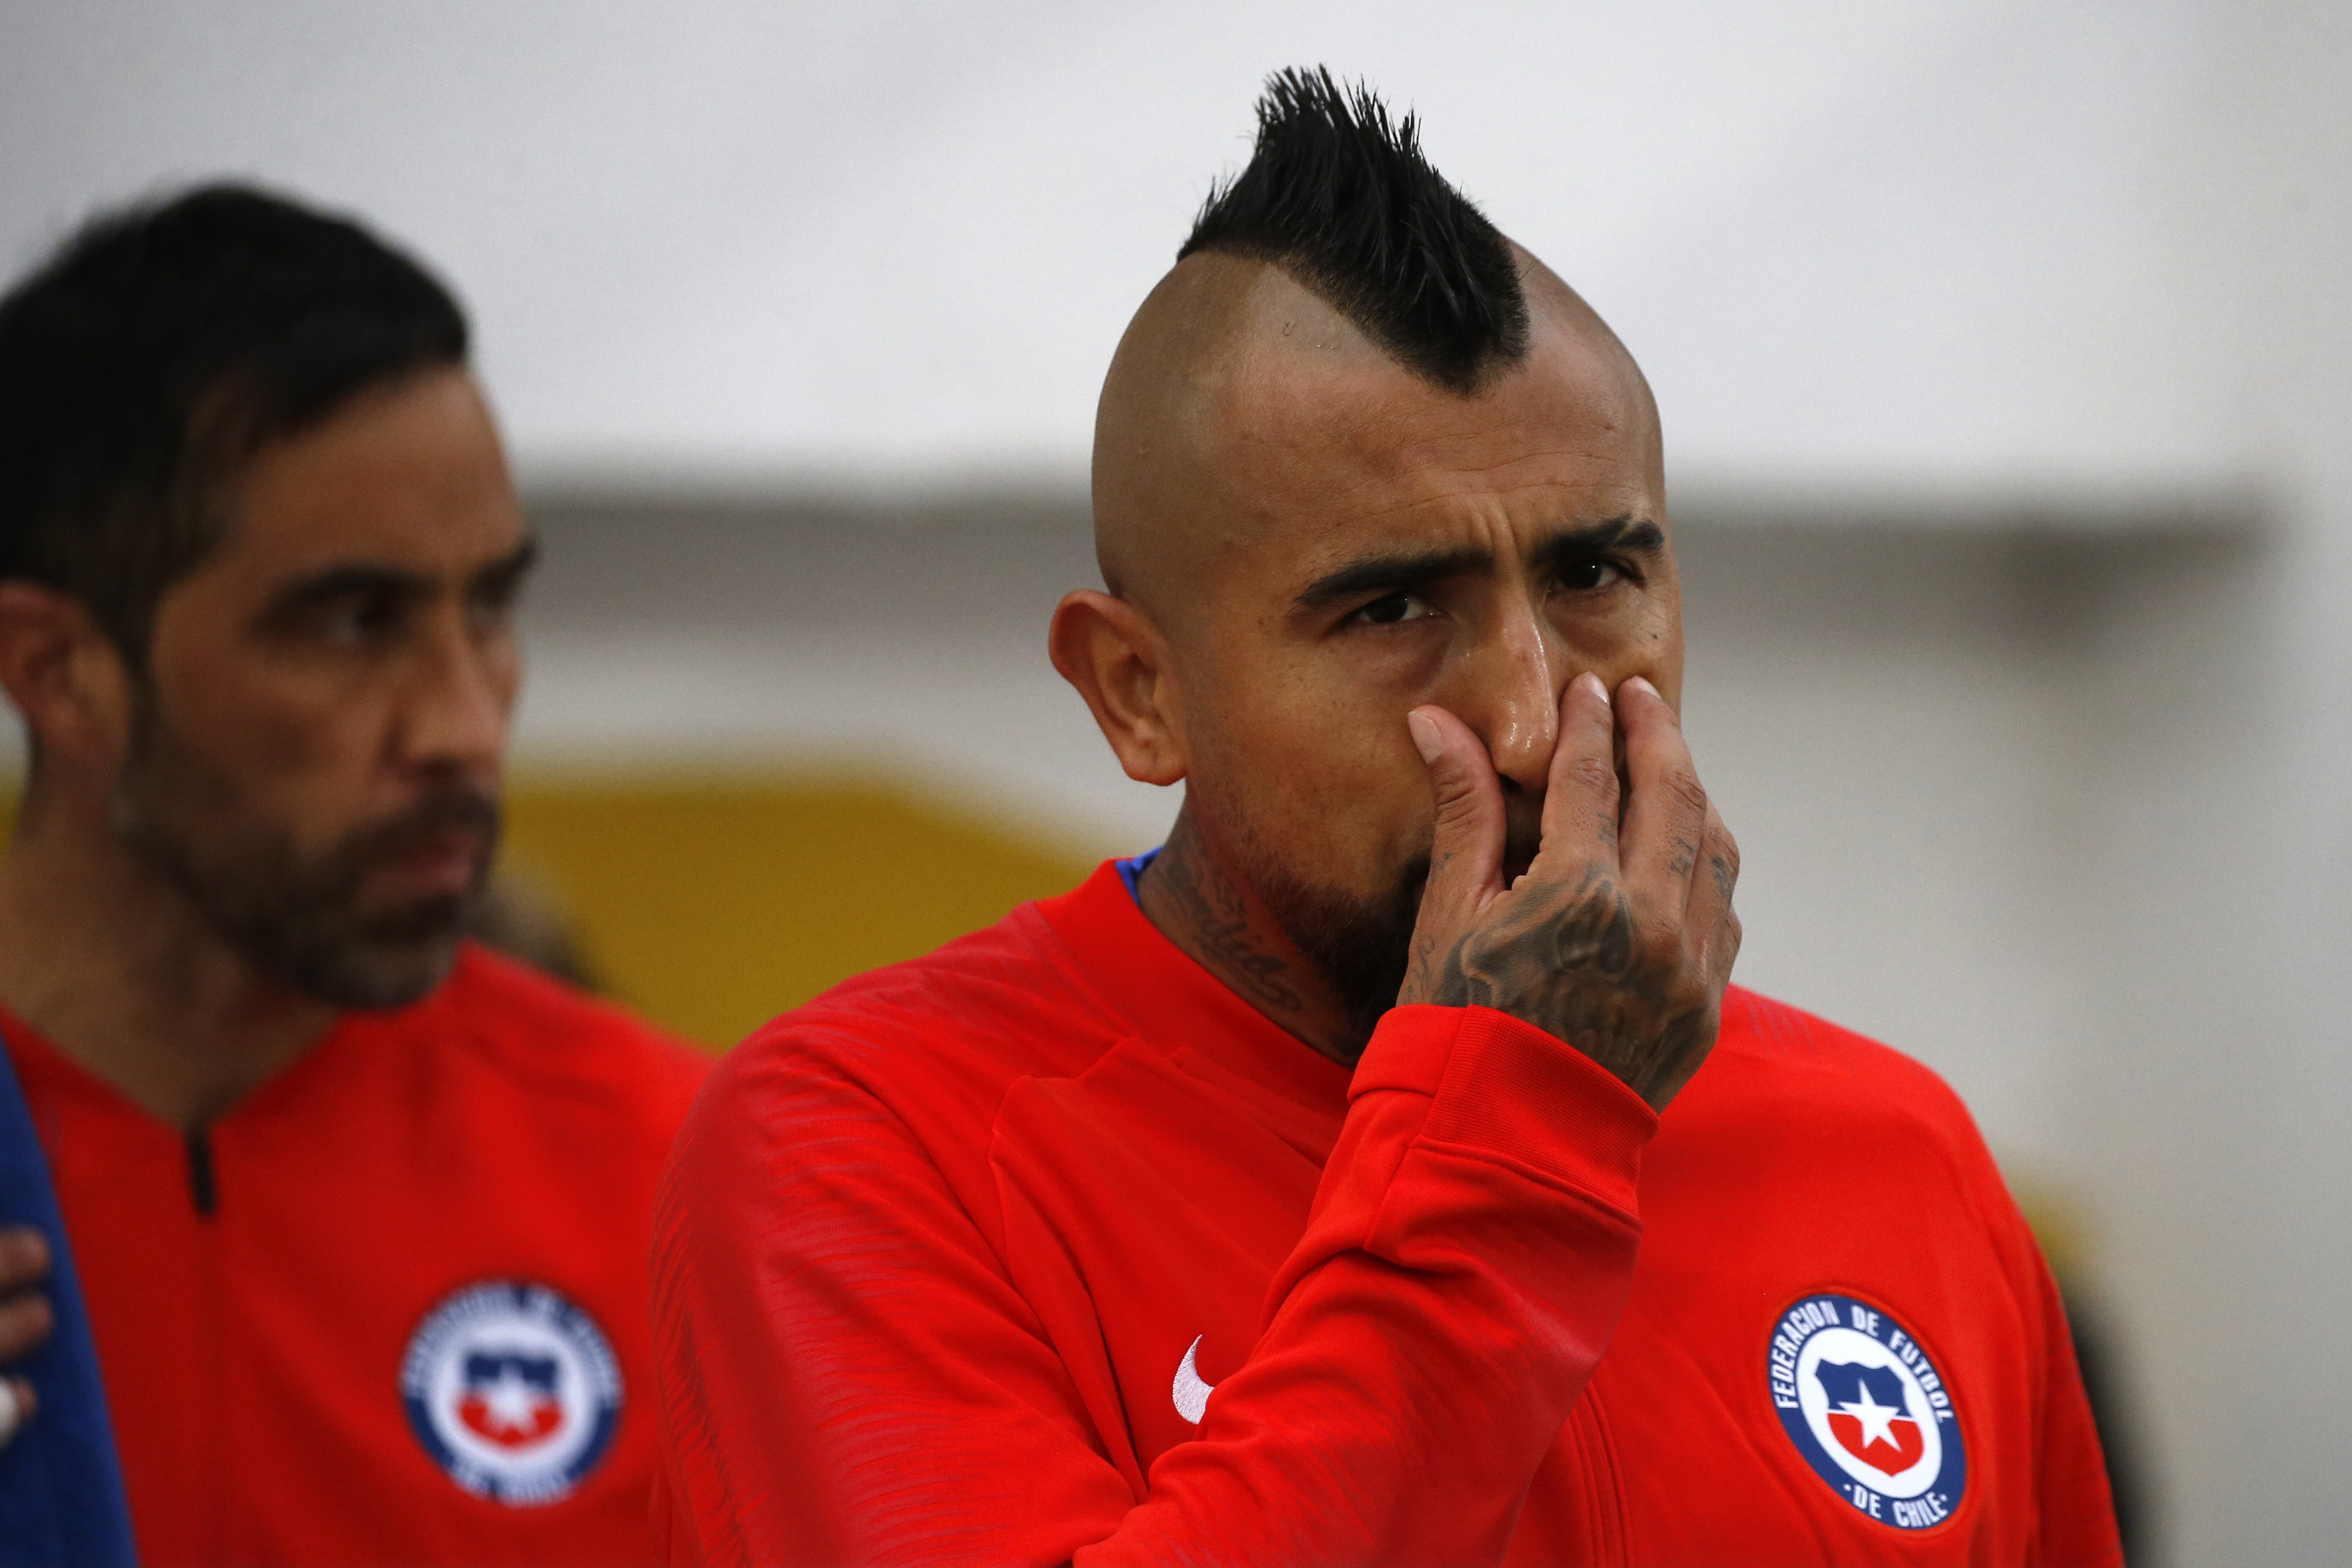 Chile Vs Peru, Clasificatorias Al Mundial De Catar